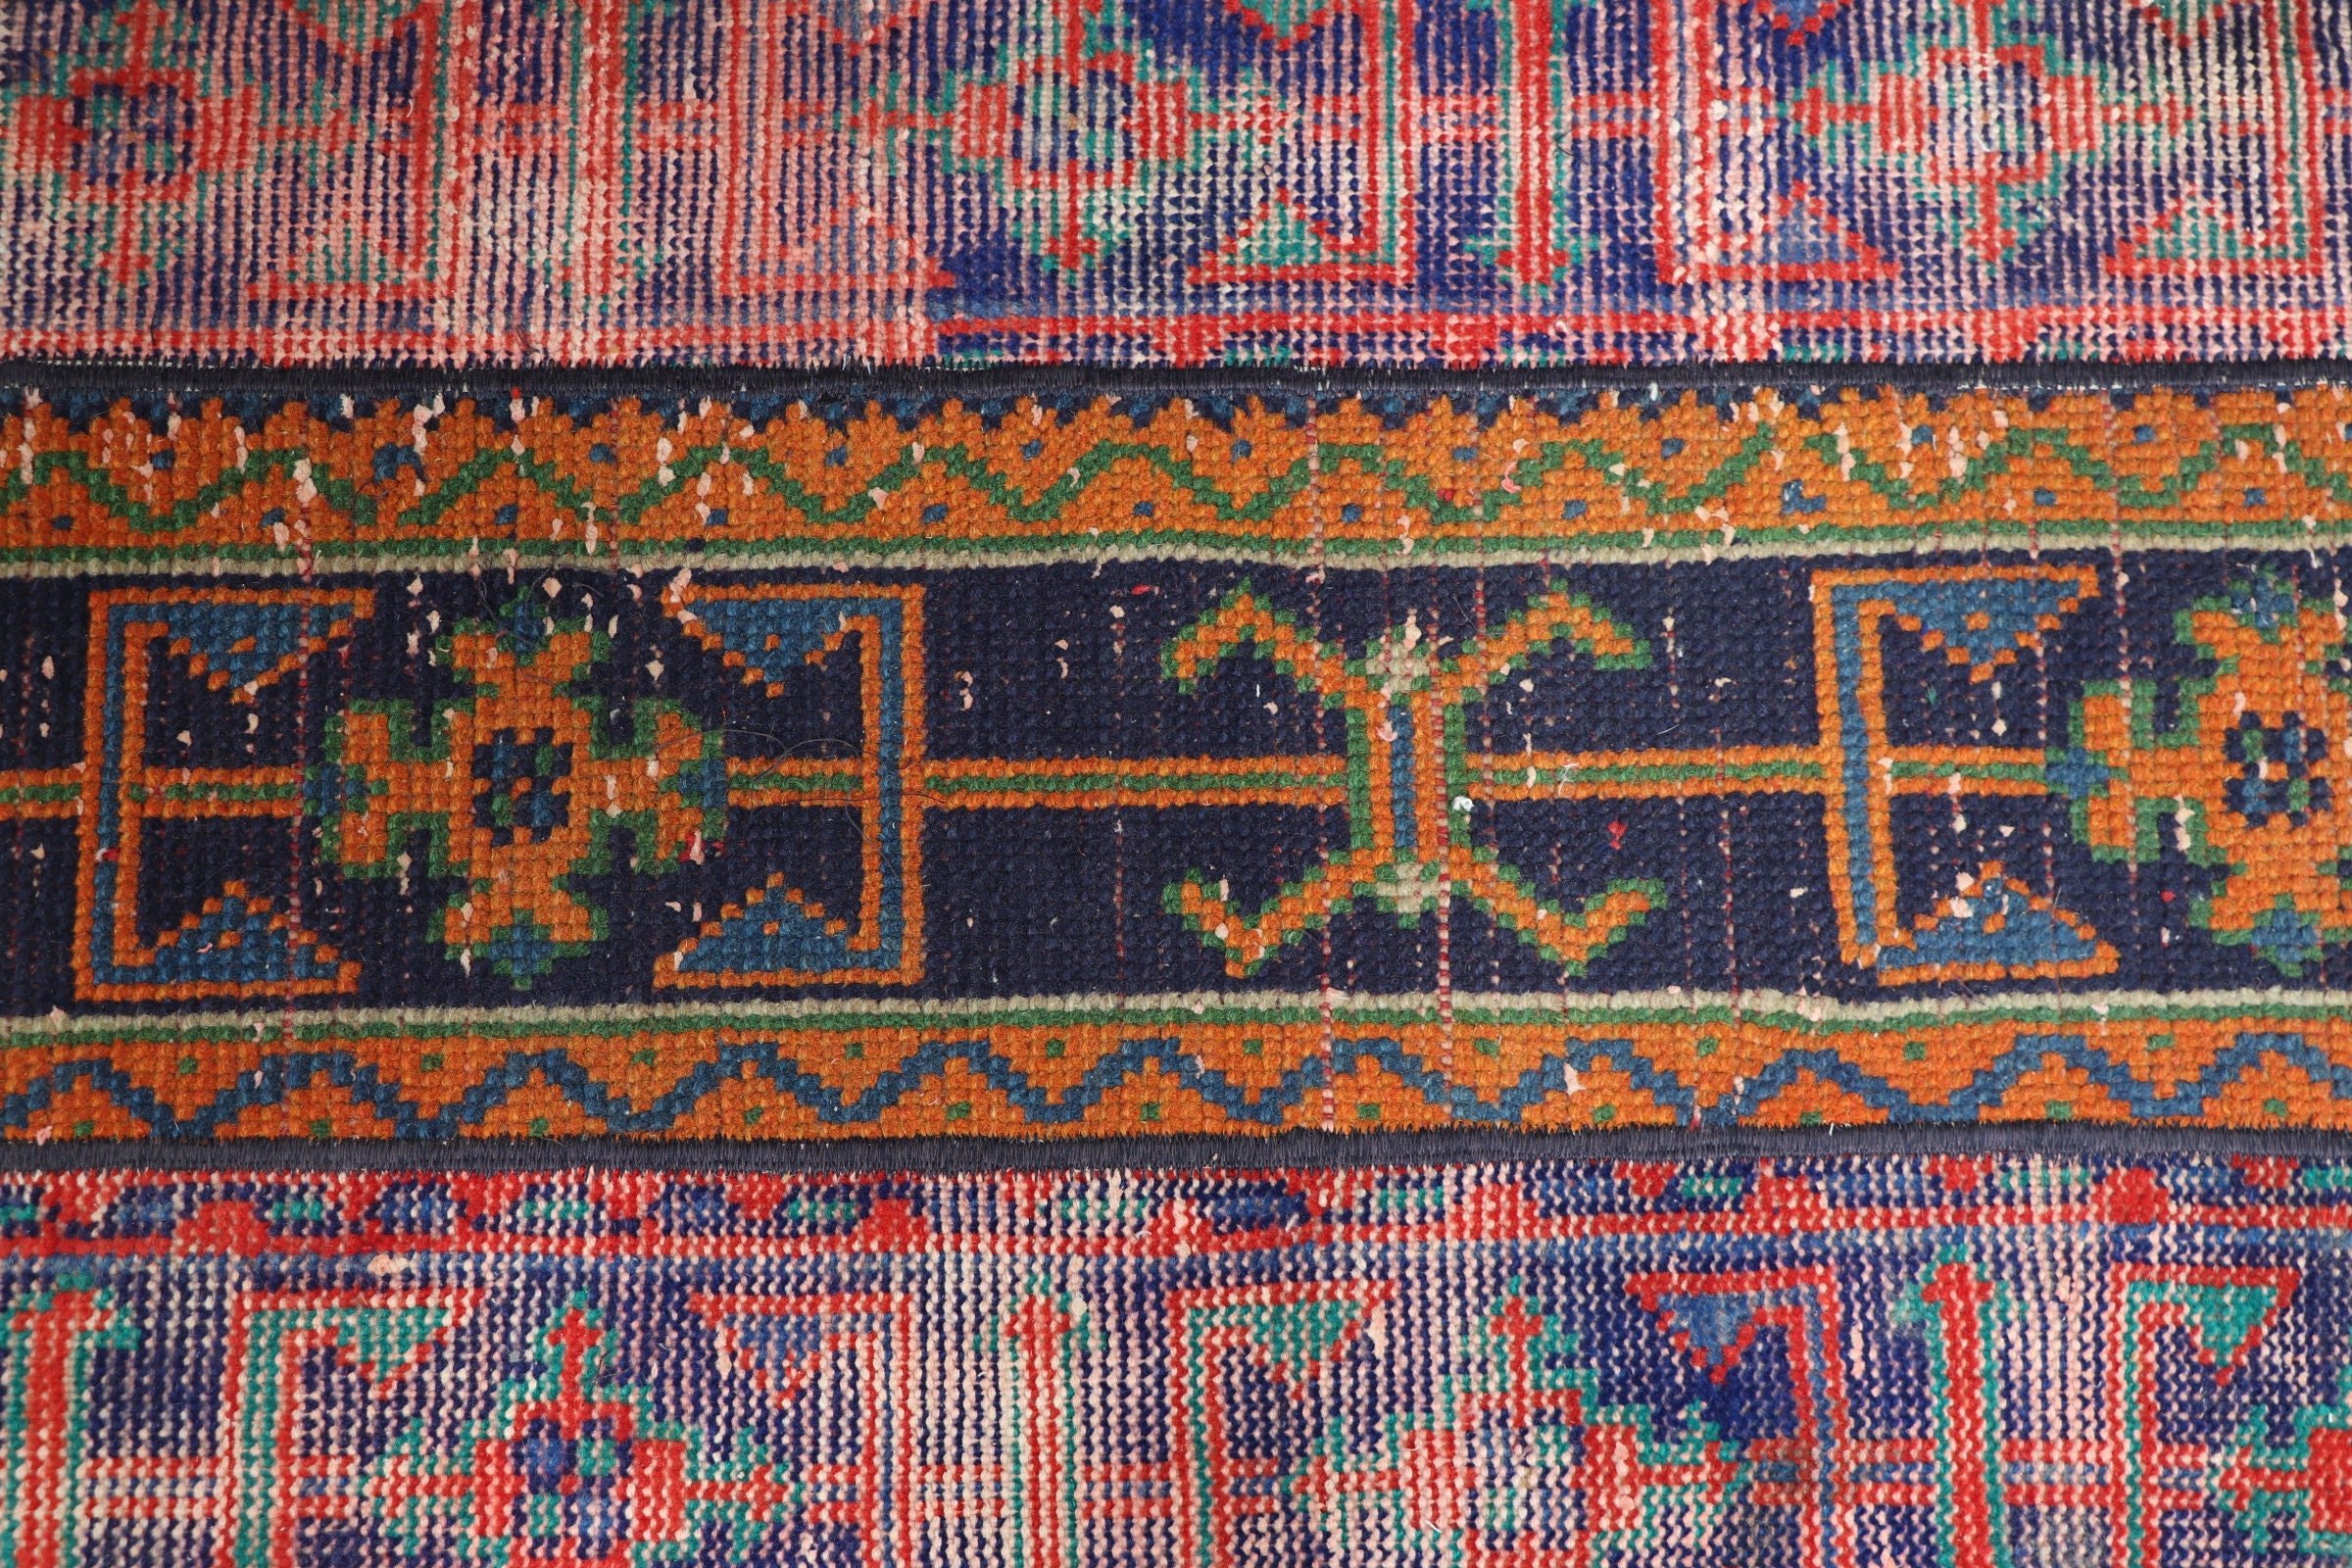 Vintage Rug, Car Mat Rug, Antique Rug, Kitchen Rug, Orange Oushak Rugs, Handwoven Rug, Turkish Rug, 1.8x3.4 ft Small Rugs